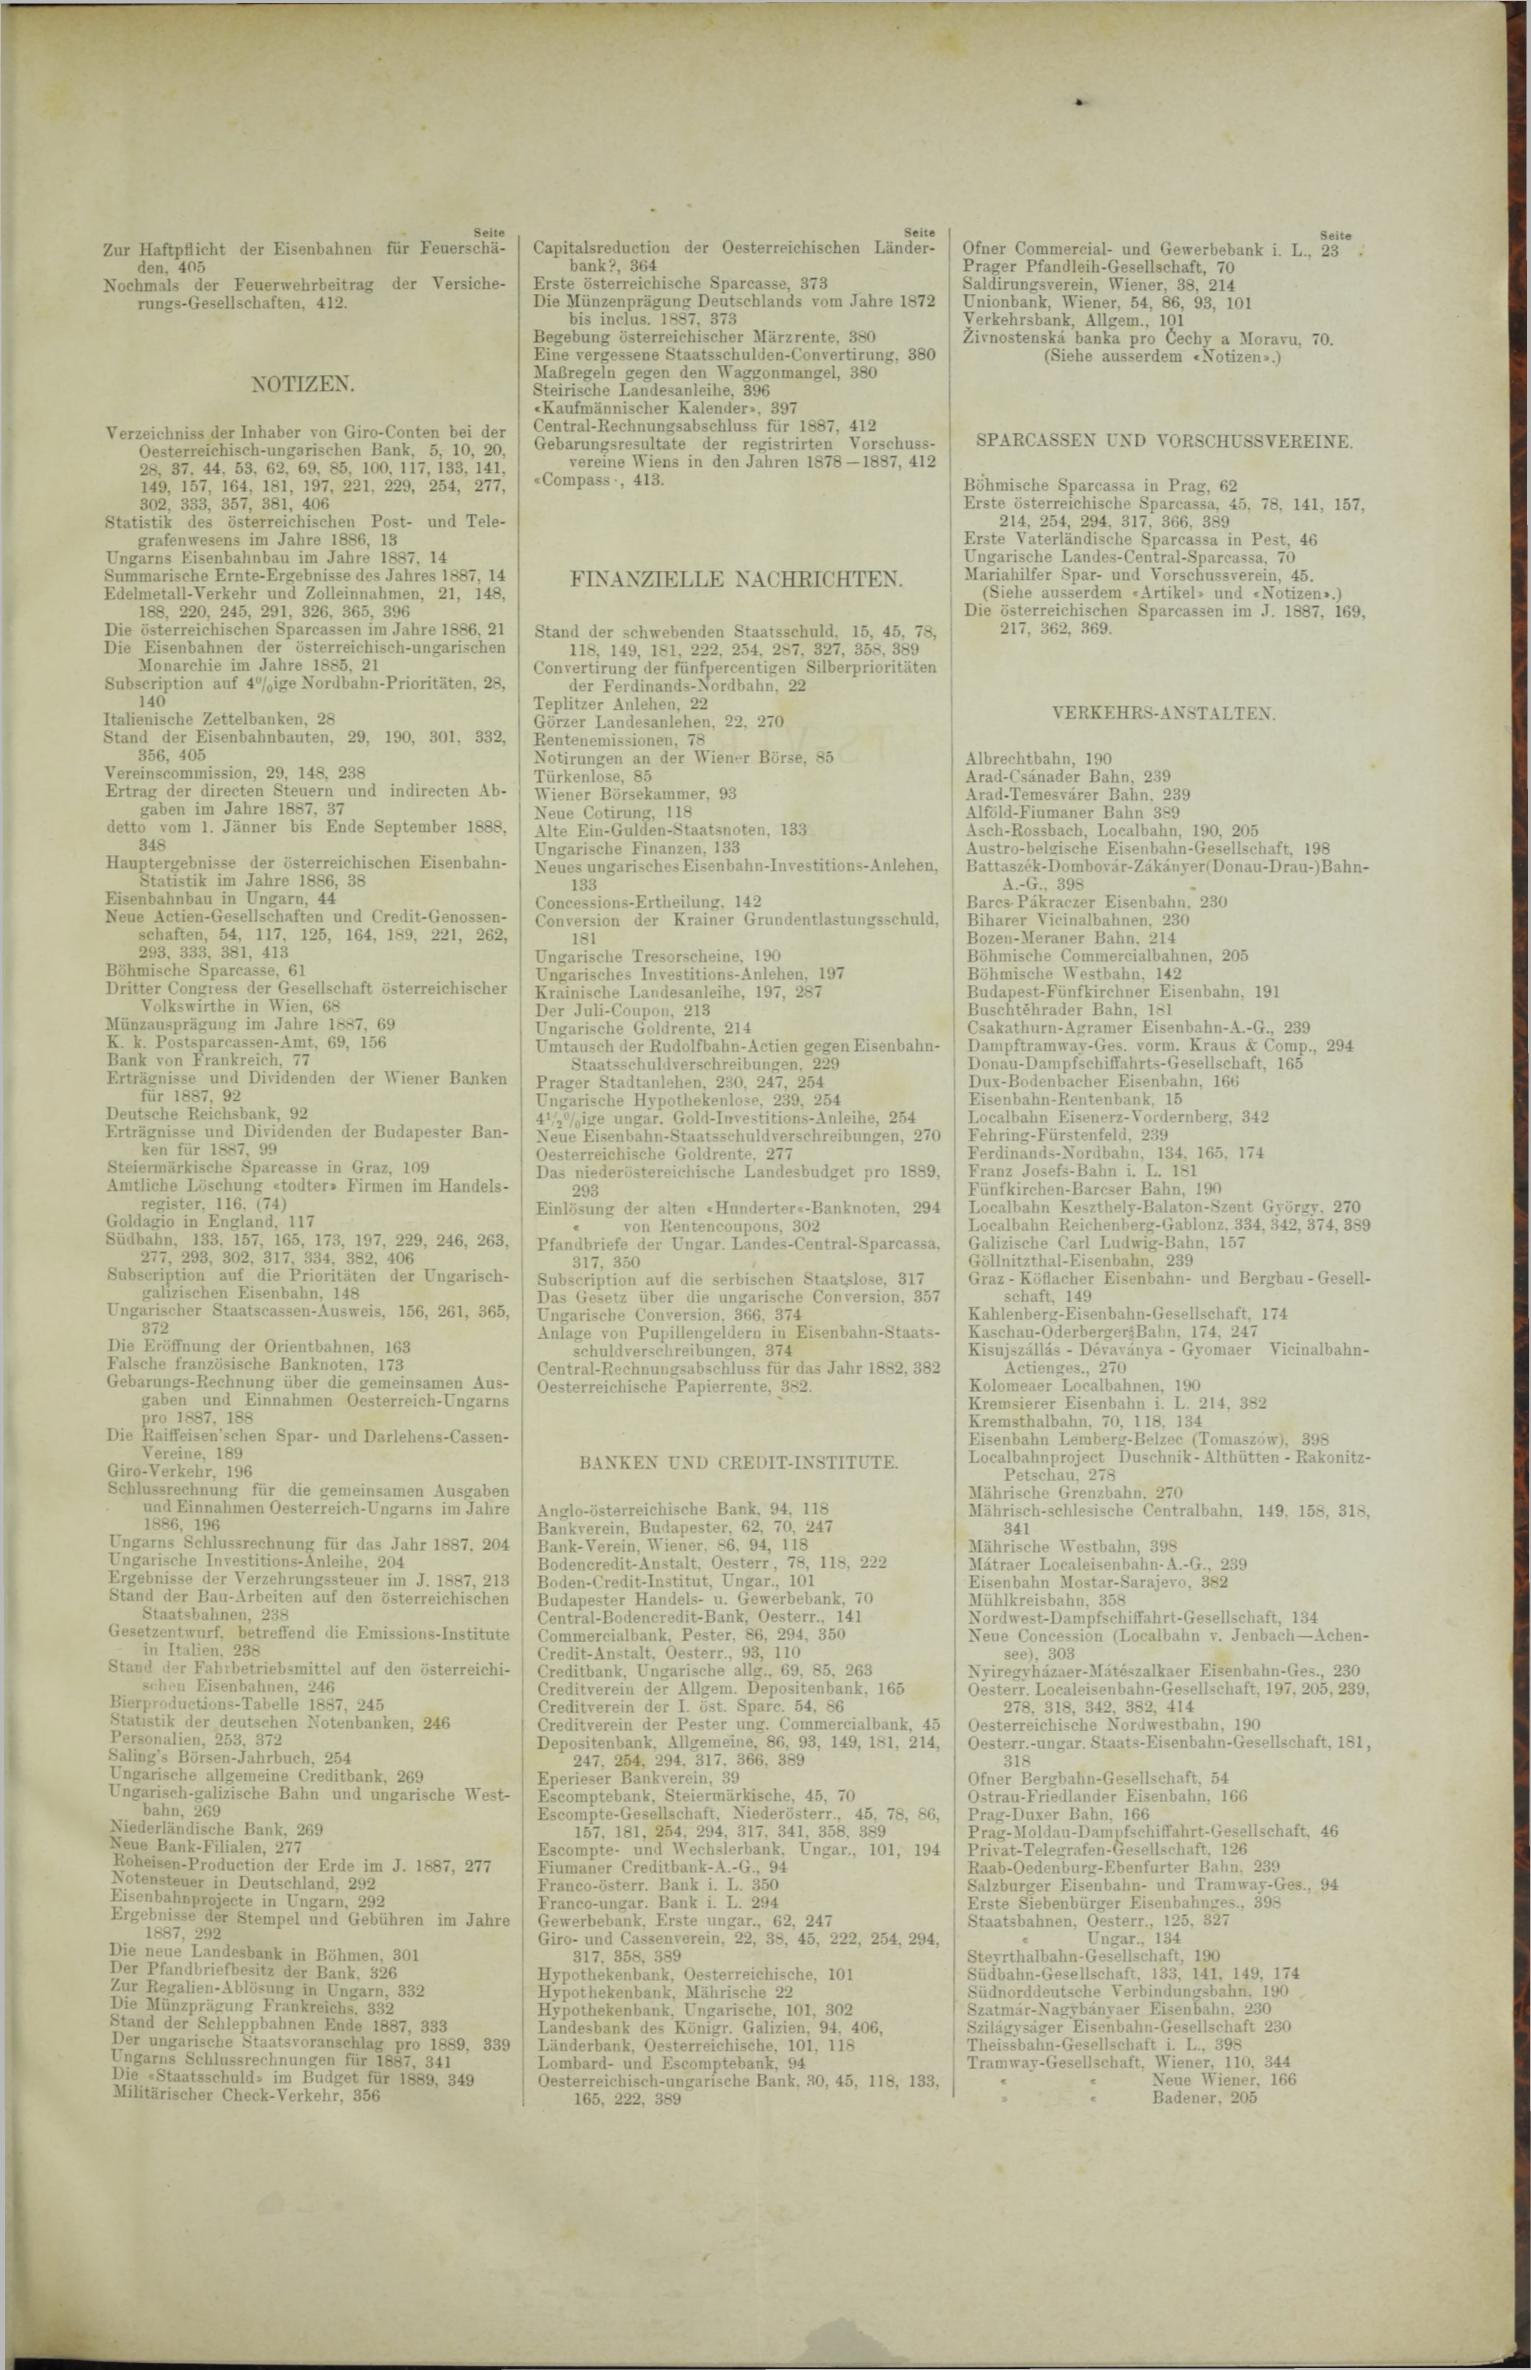 Der Tresor 19.01.1888 - Seite 11